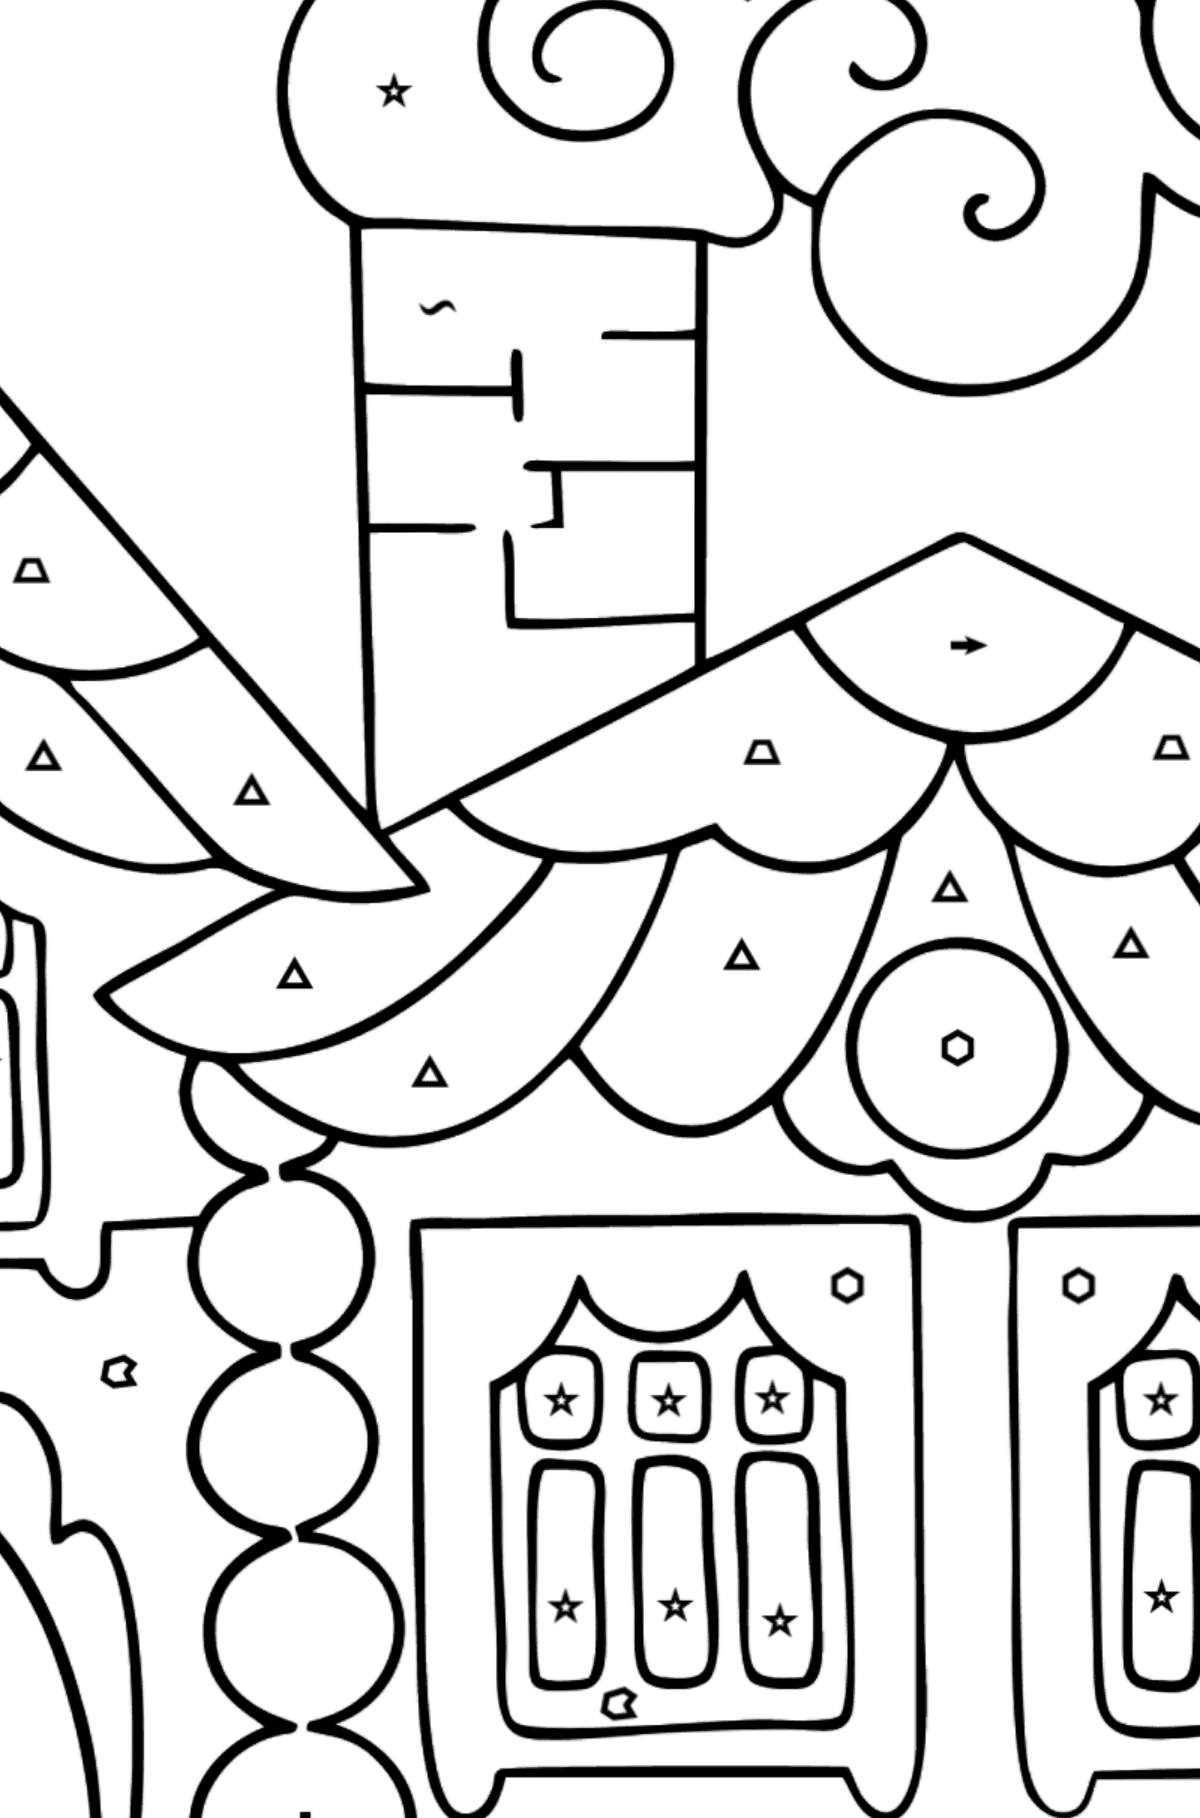 Kolorowanka Dom w lesie (trudna) - Kolorowanie według symboli i figur geometrycznych dla dzieci